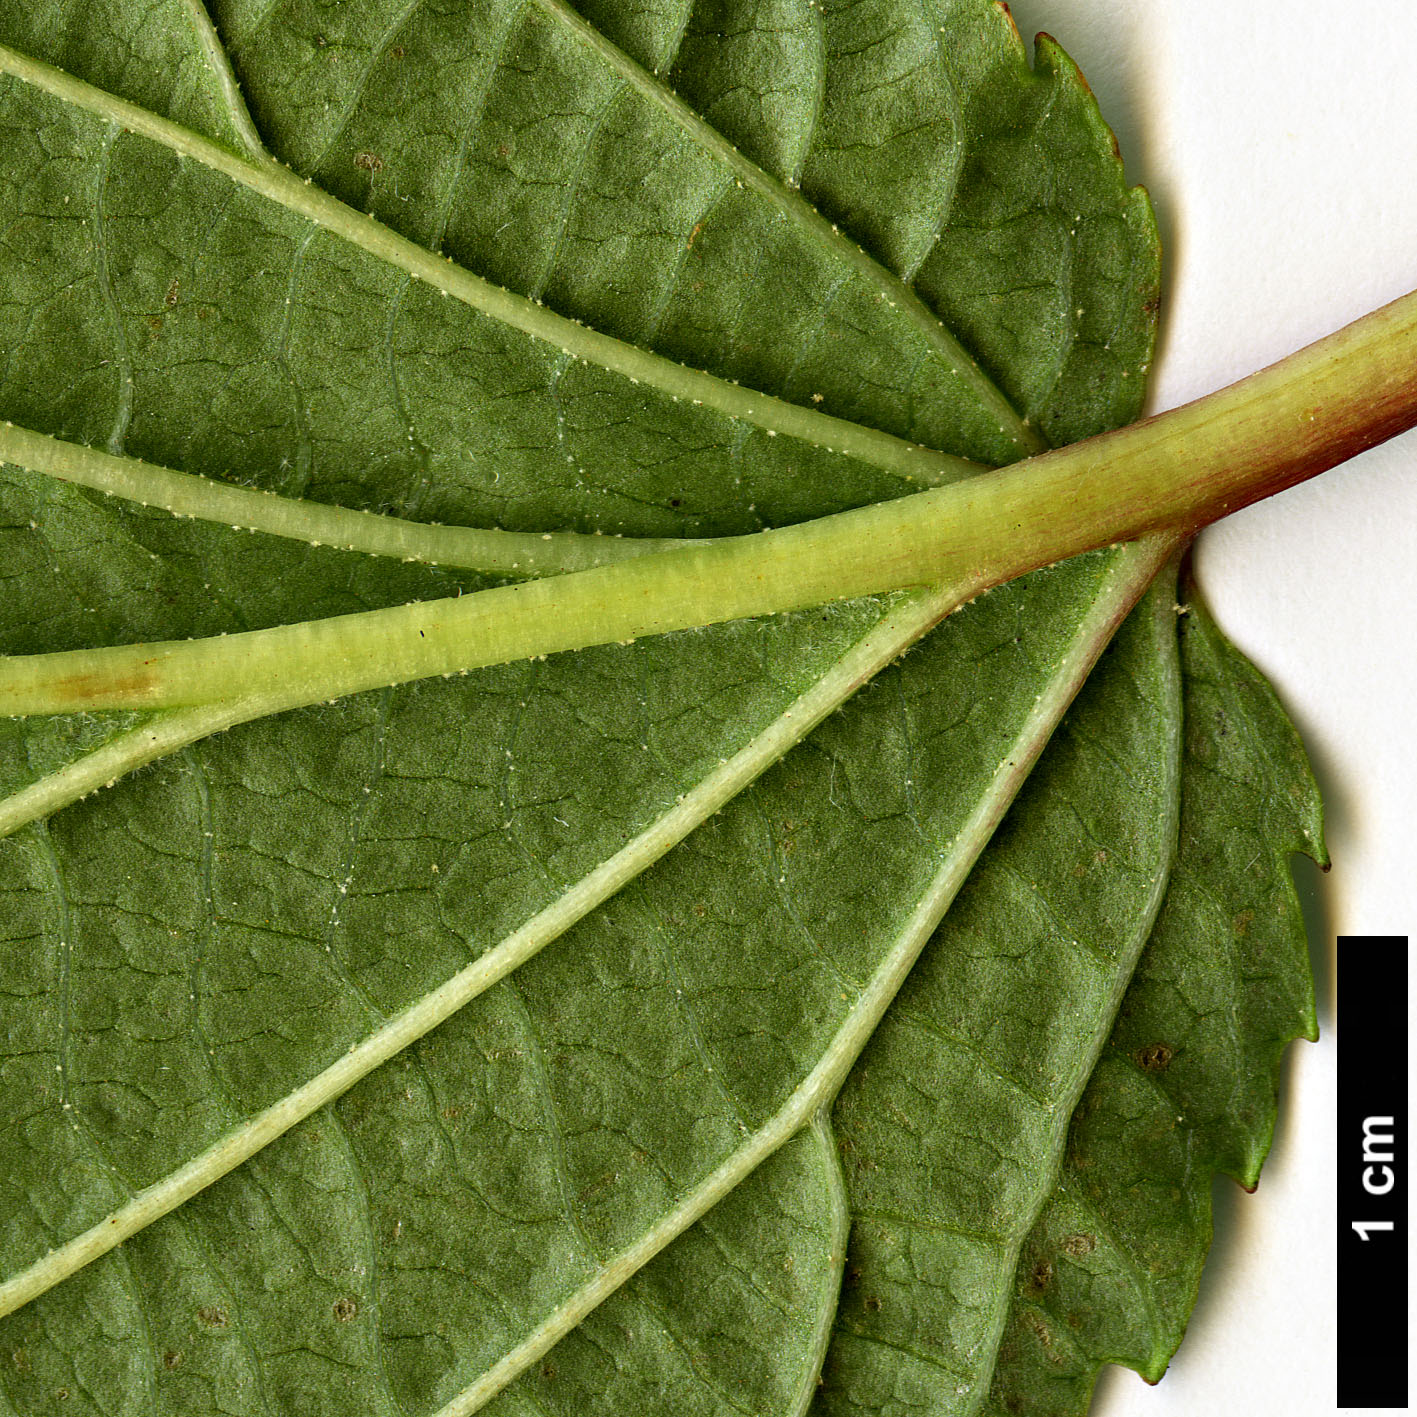 High resolution image: Family: Adoxaceae - Genus: Viburnum - Taxon: nervosum